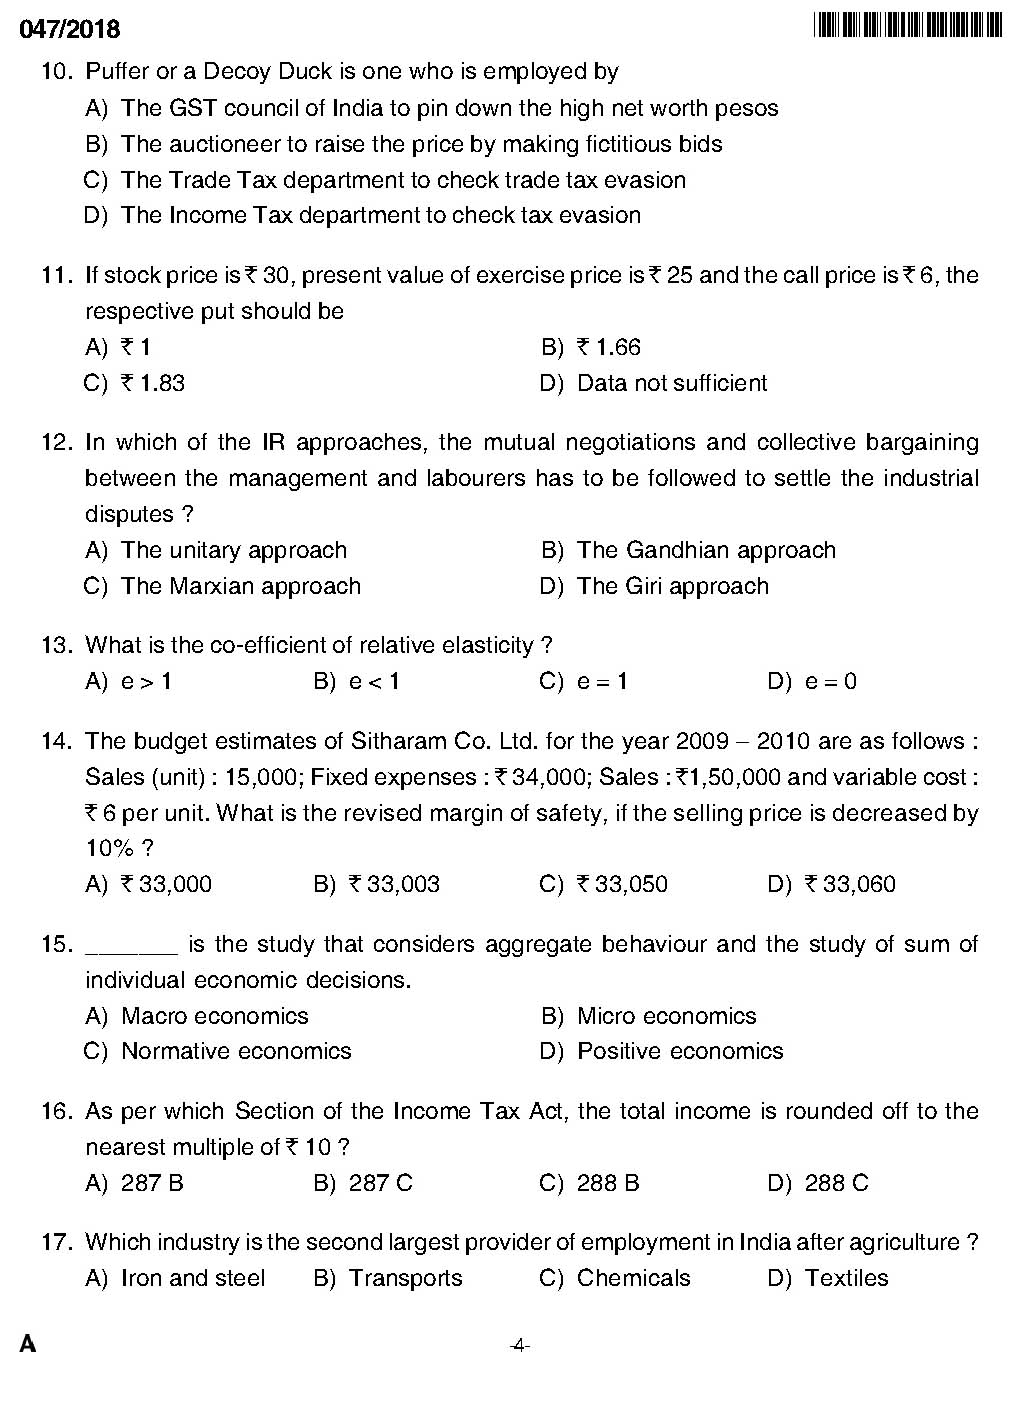 KPSC Higher Secondary School Teacher Exam Question 0472018 2